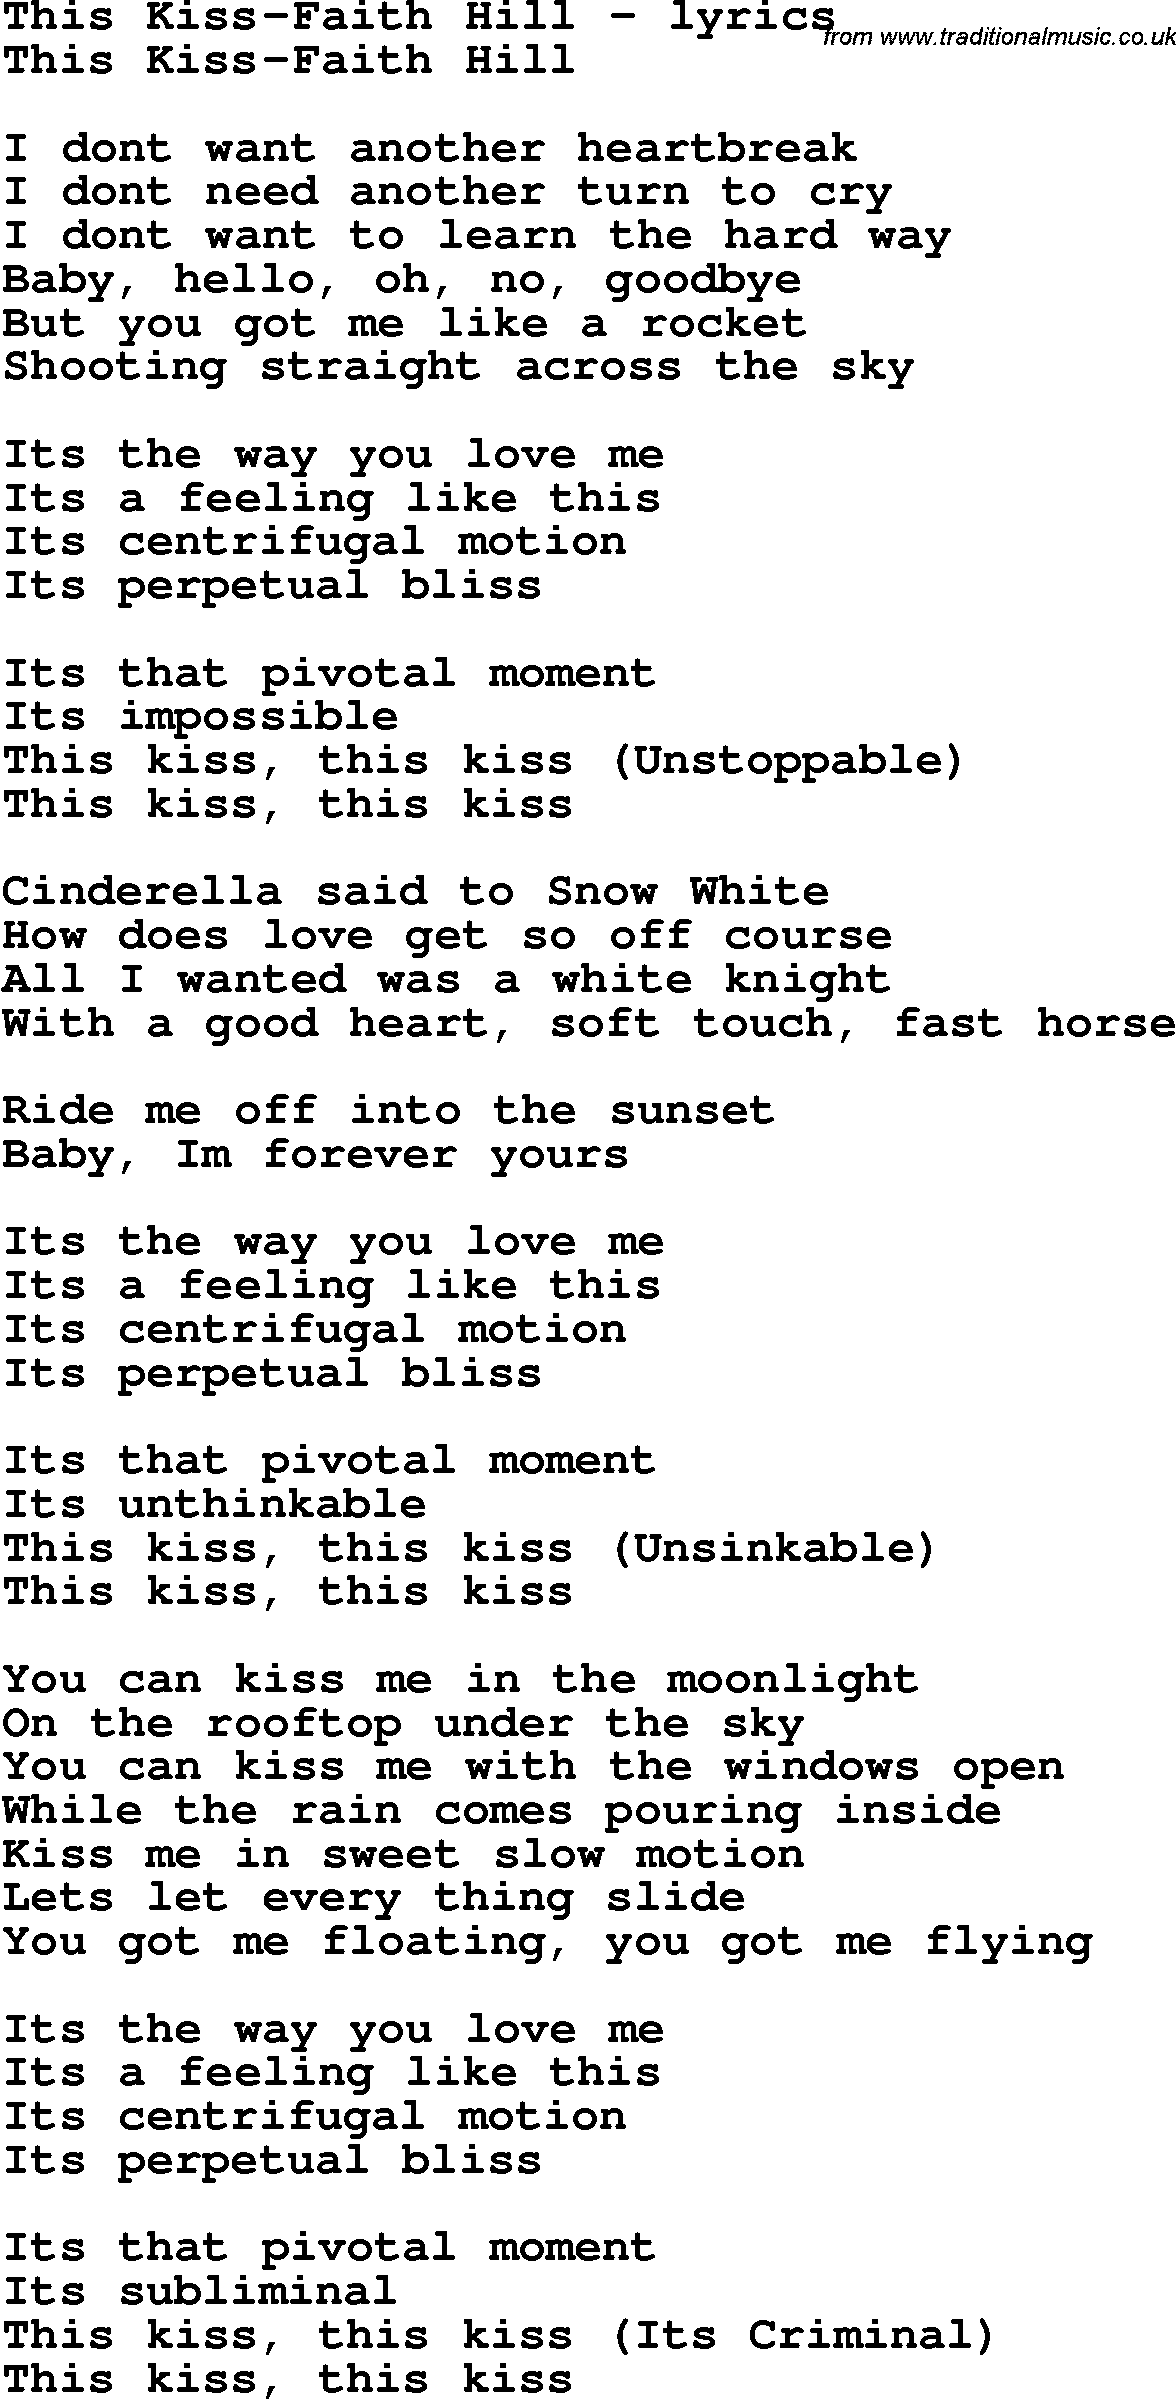 Love Song Lyrics for: This Kiss-Faith Hill